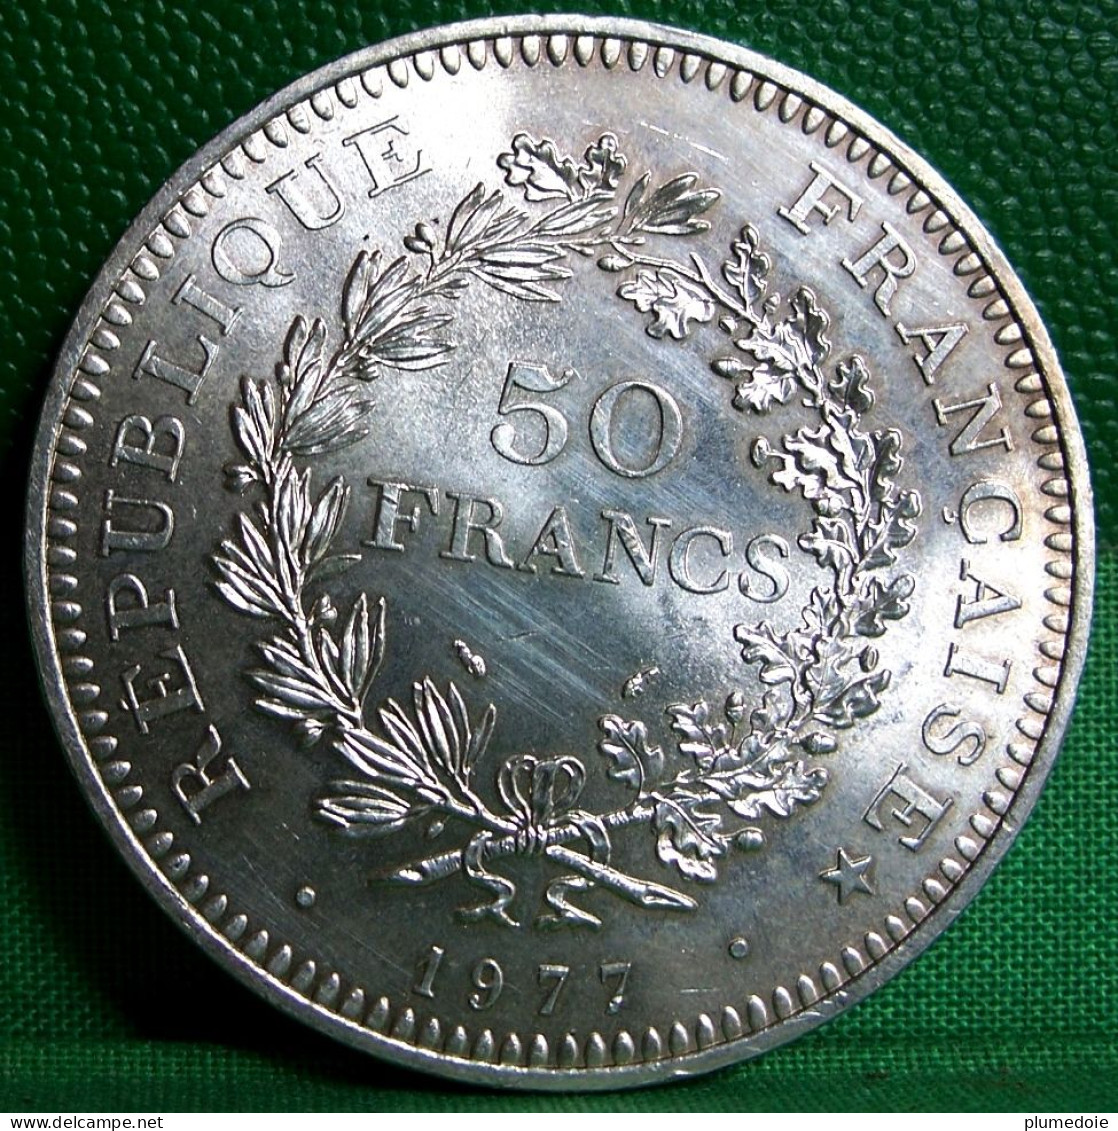 MONNAIE ARGENT . 50 FRANCS 1977  HERCULE . FRANCE SILVER COIN .  SUP - 50 Francs